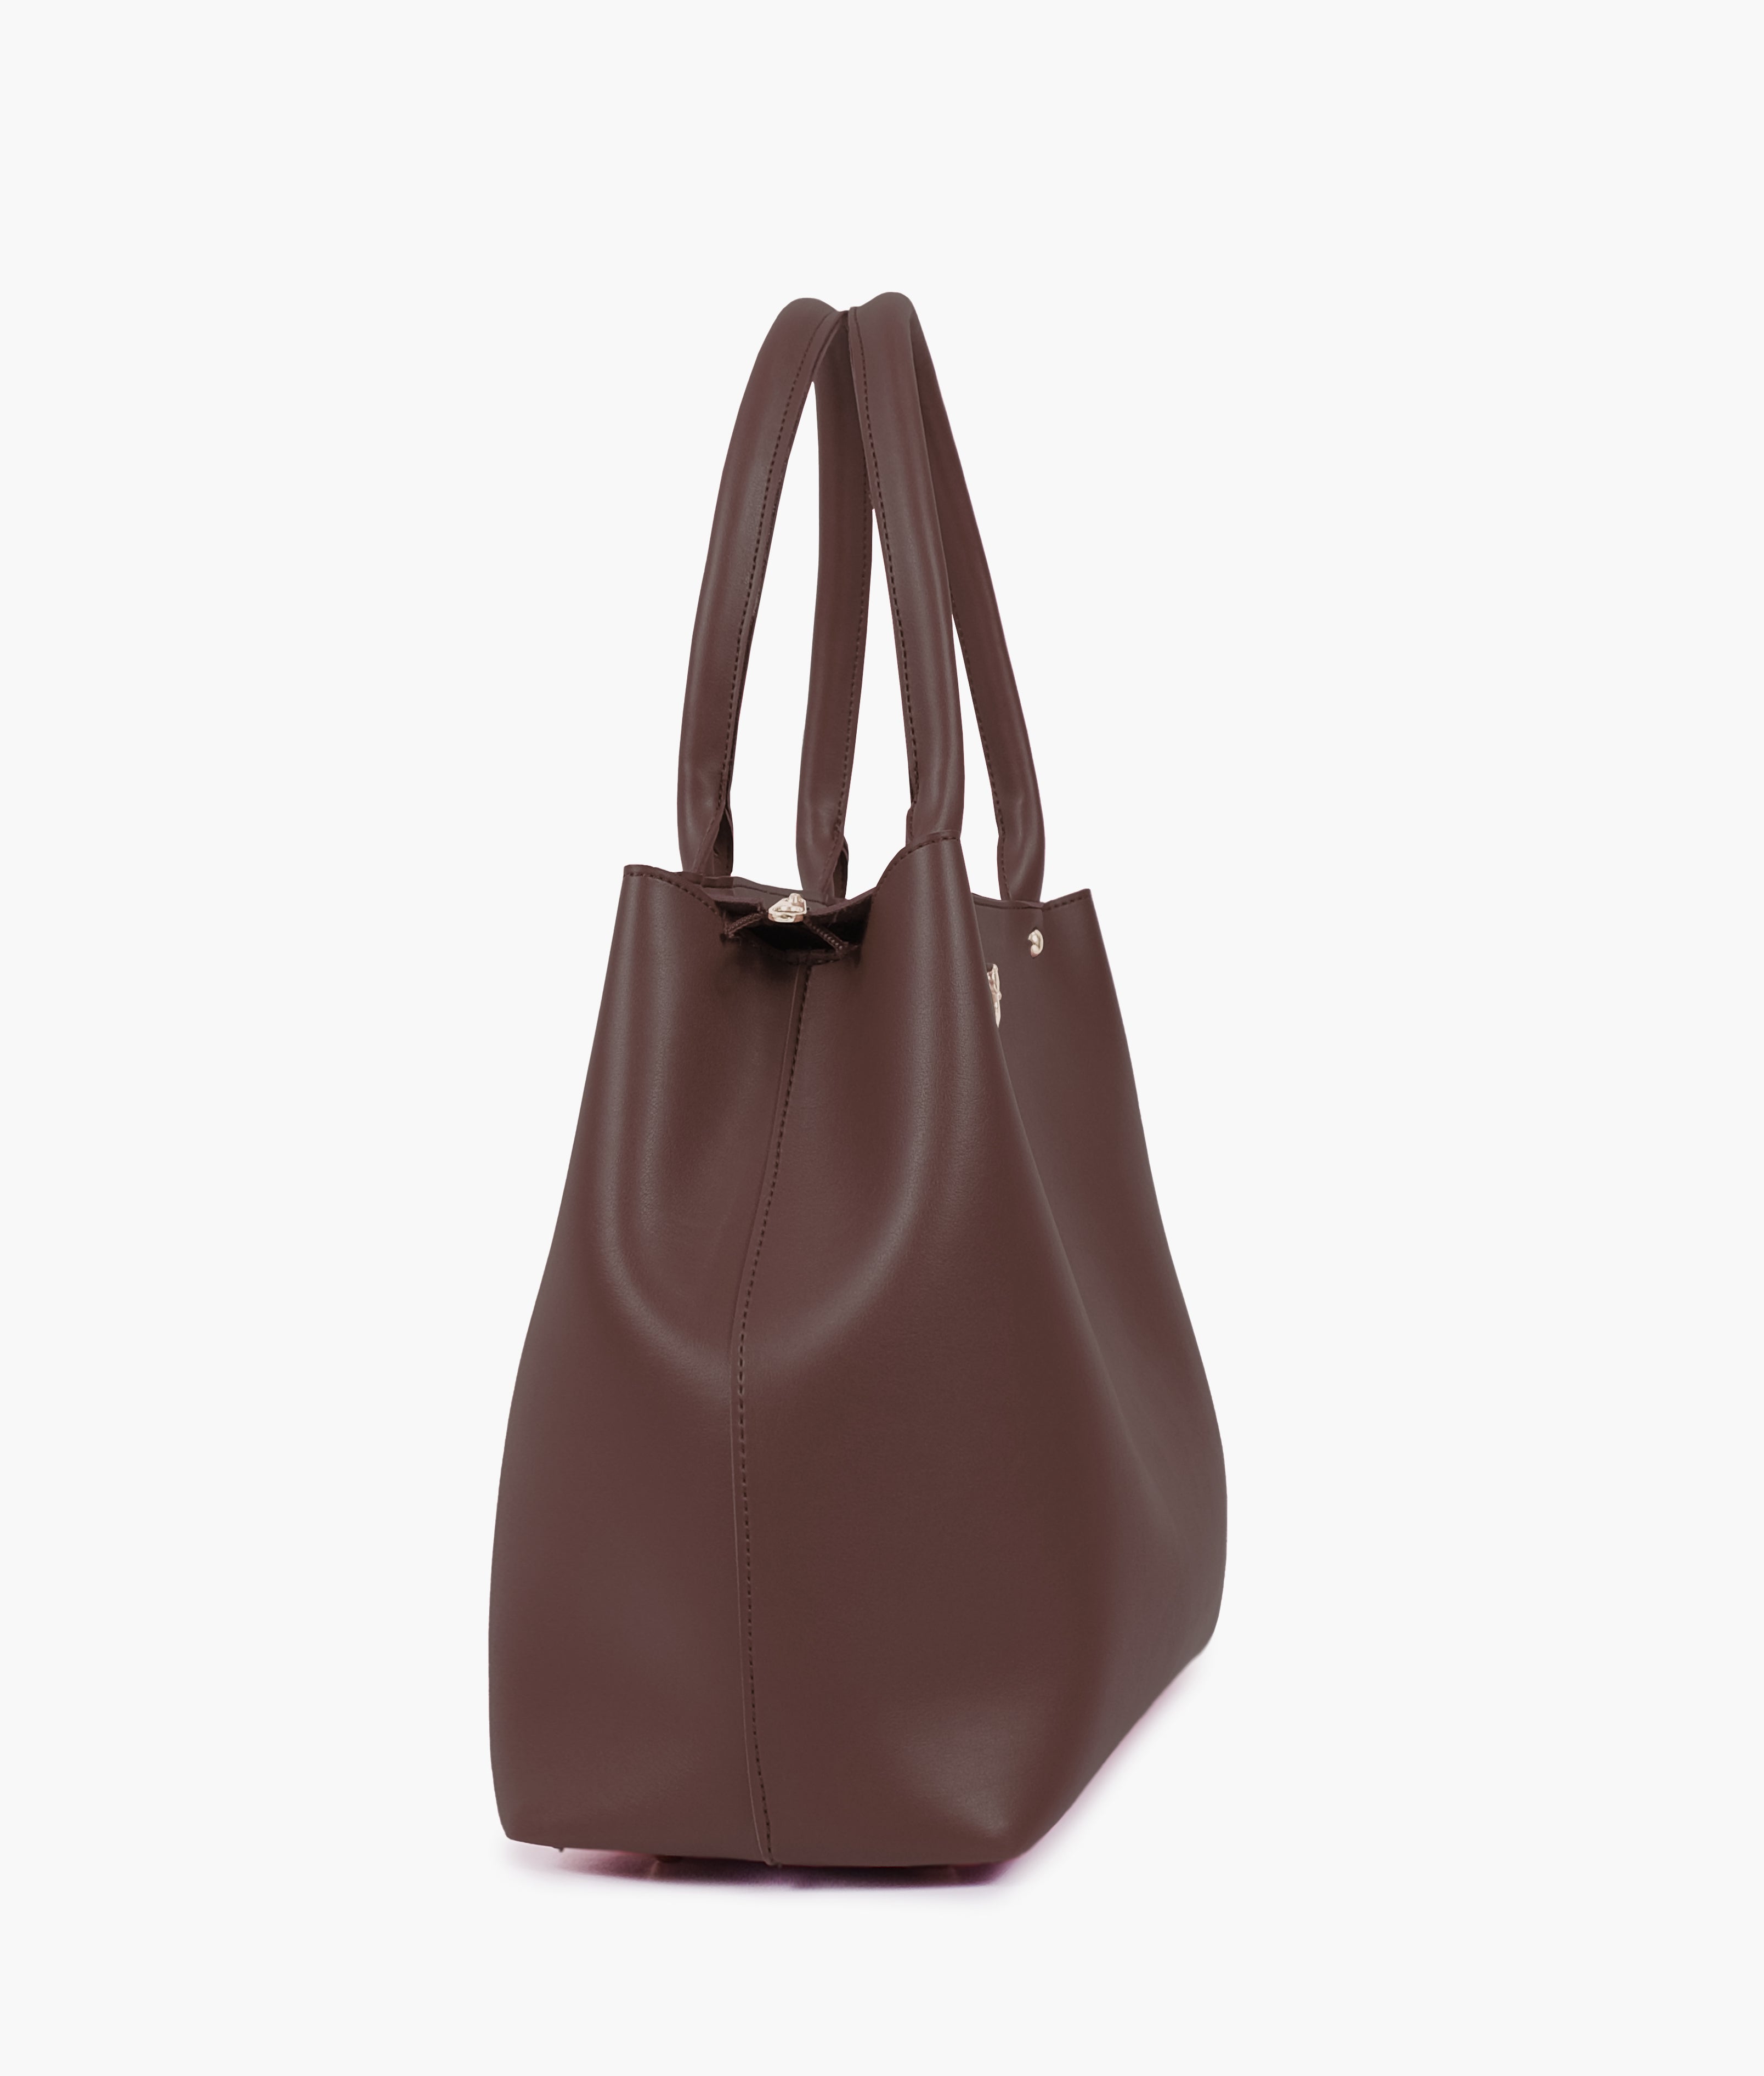 Dark brown zipper tote bag